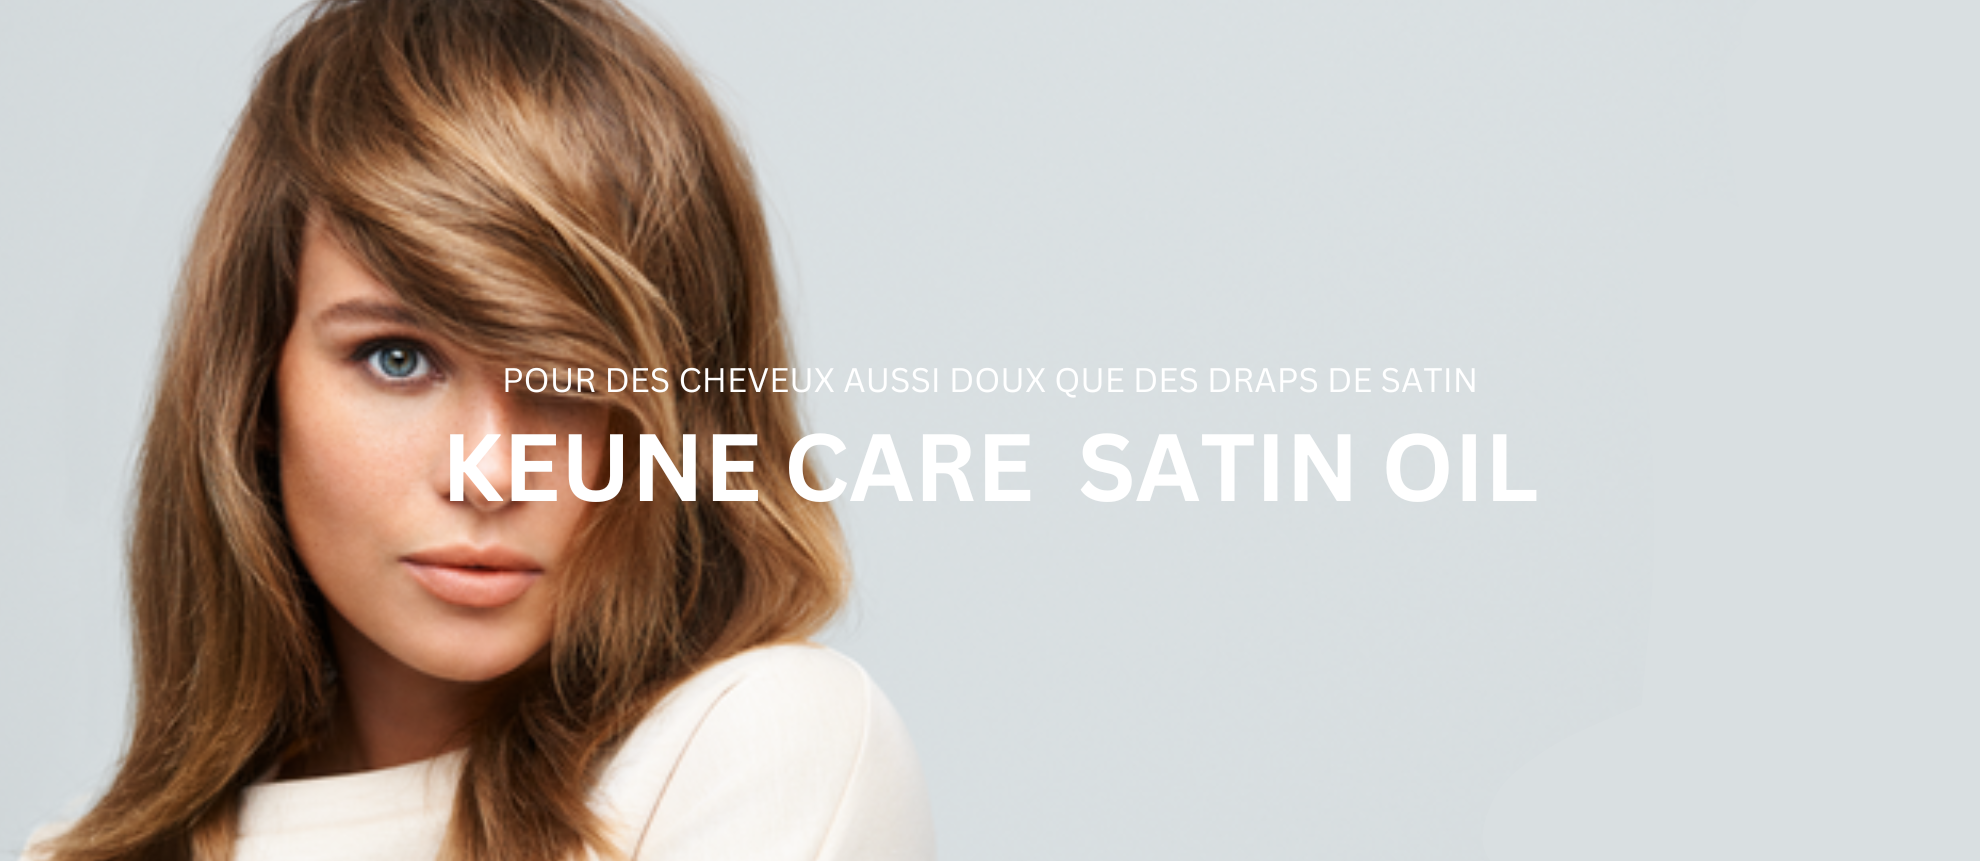 Keune Care Satin Oil - Produits de soins pour les cheveux secs, shampooing et revitalisant pour une hydratation intense des cheveux.